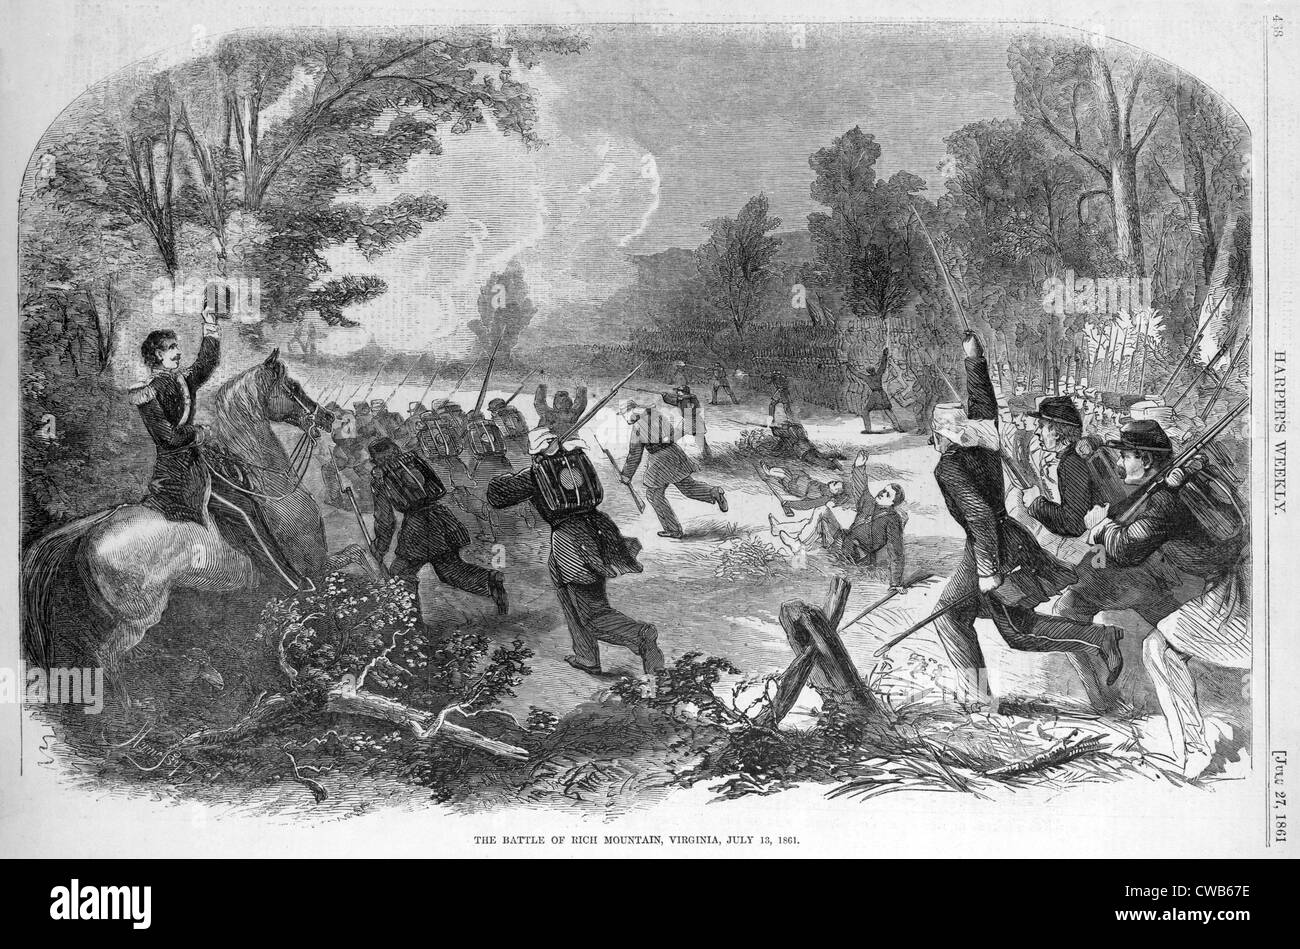 Der Bürgerkrieg. Die Schlacht von Rich Mountain, Virginia (West), 13. Juli 1861. Gravur ca 1861 Stockfoto